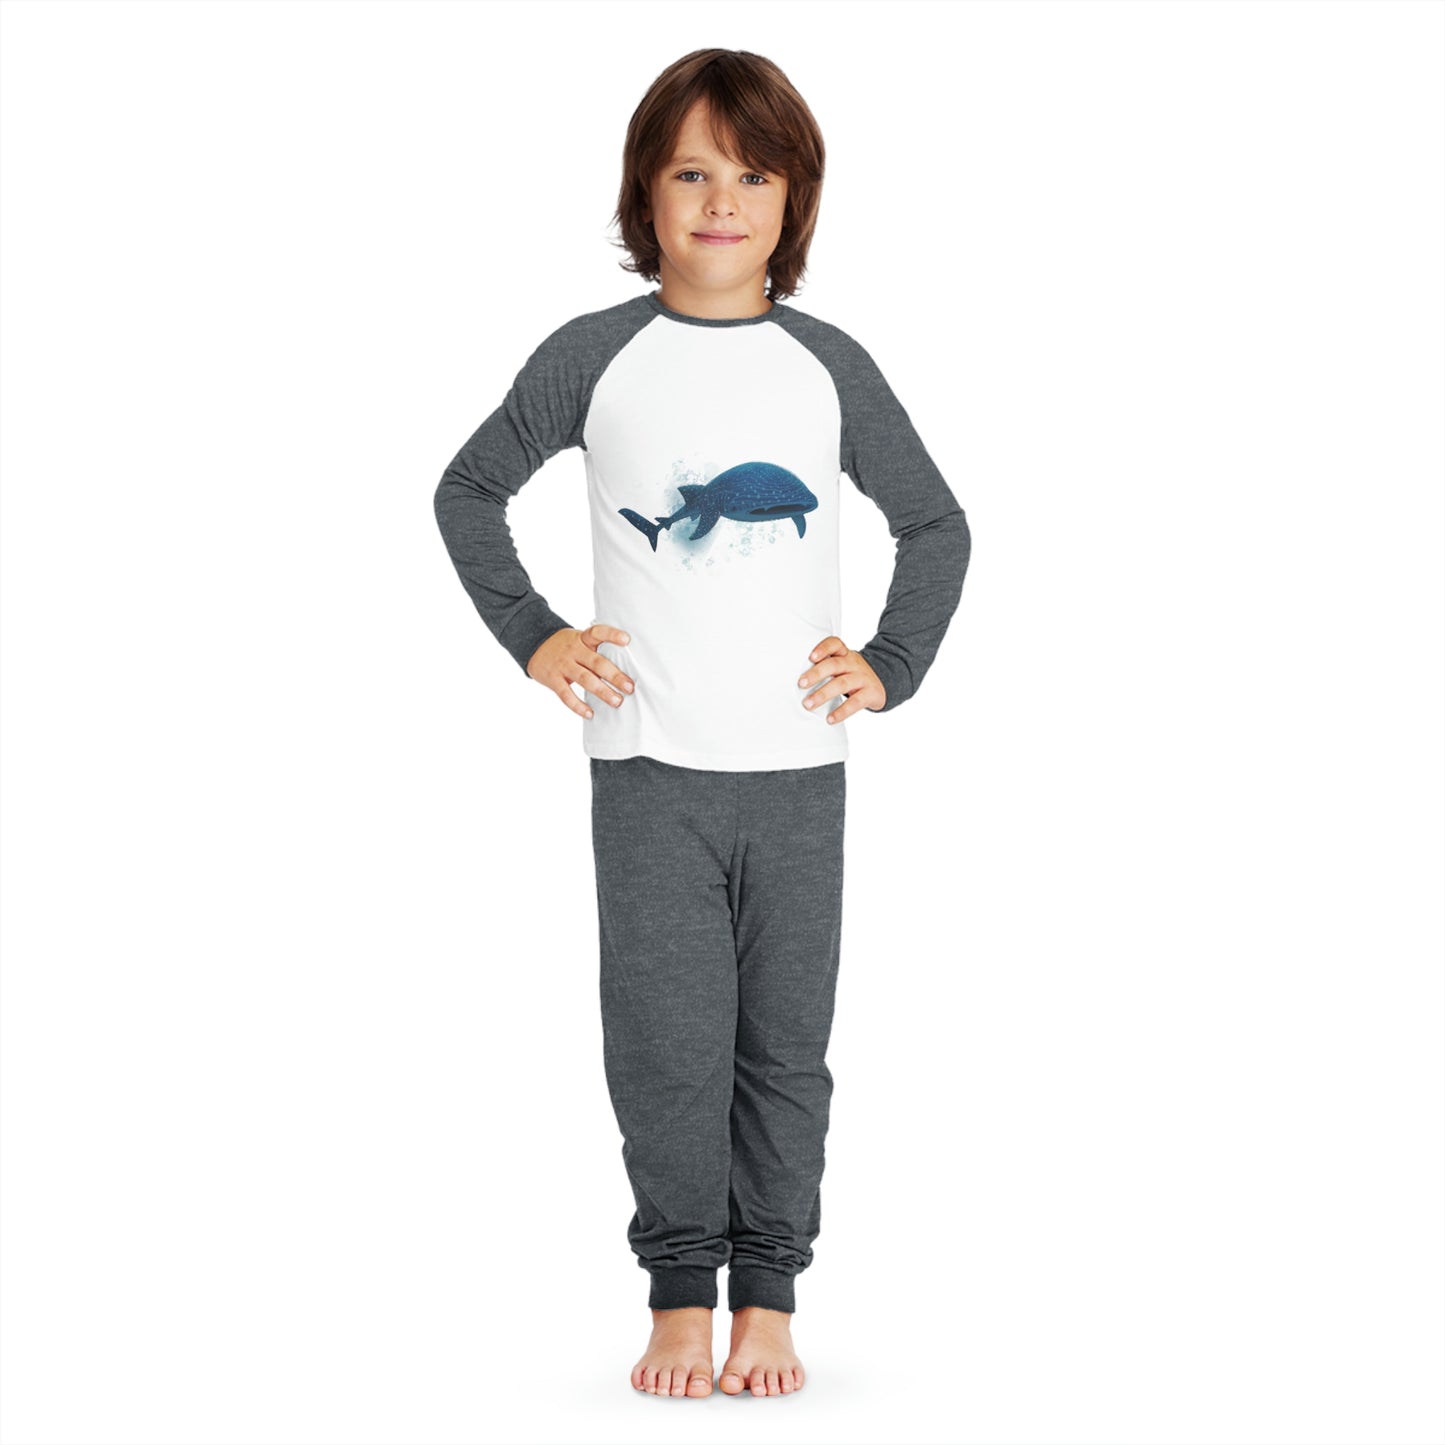 Kids' Pyjama Set - Whale Shark